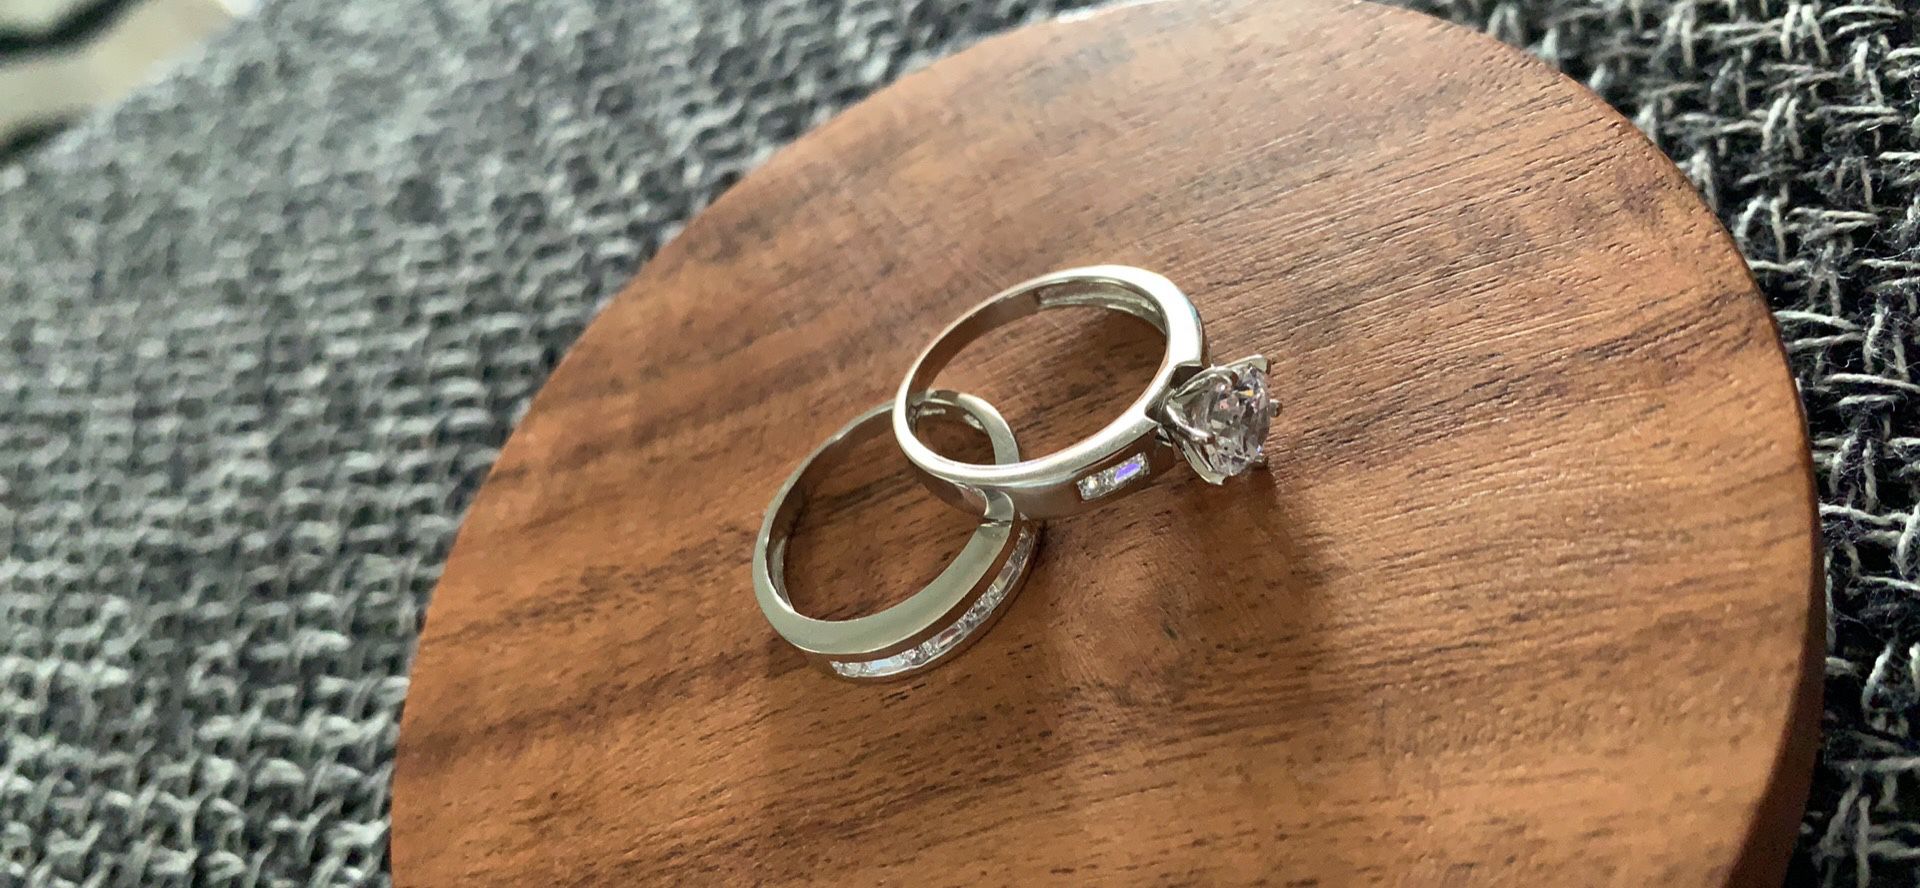 Wedding Ring Set 